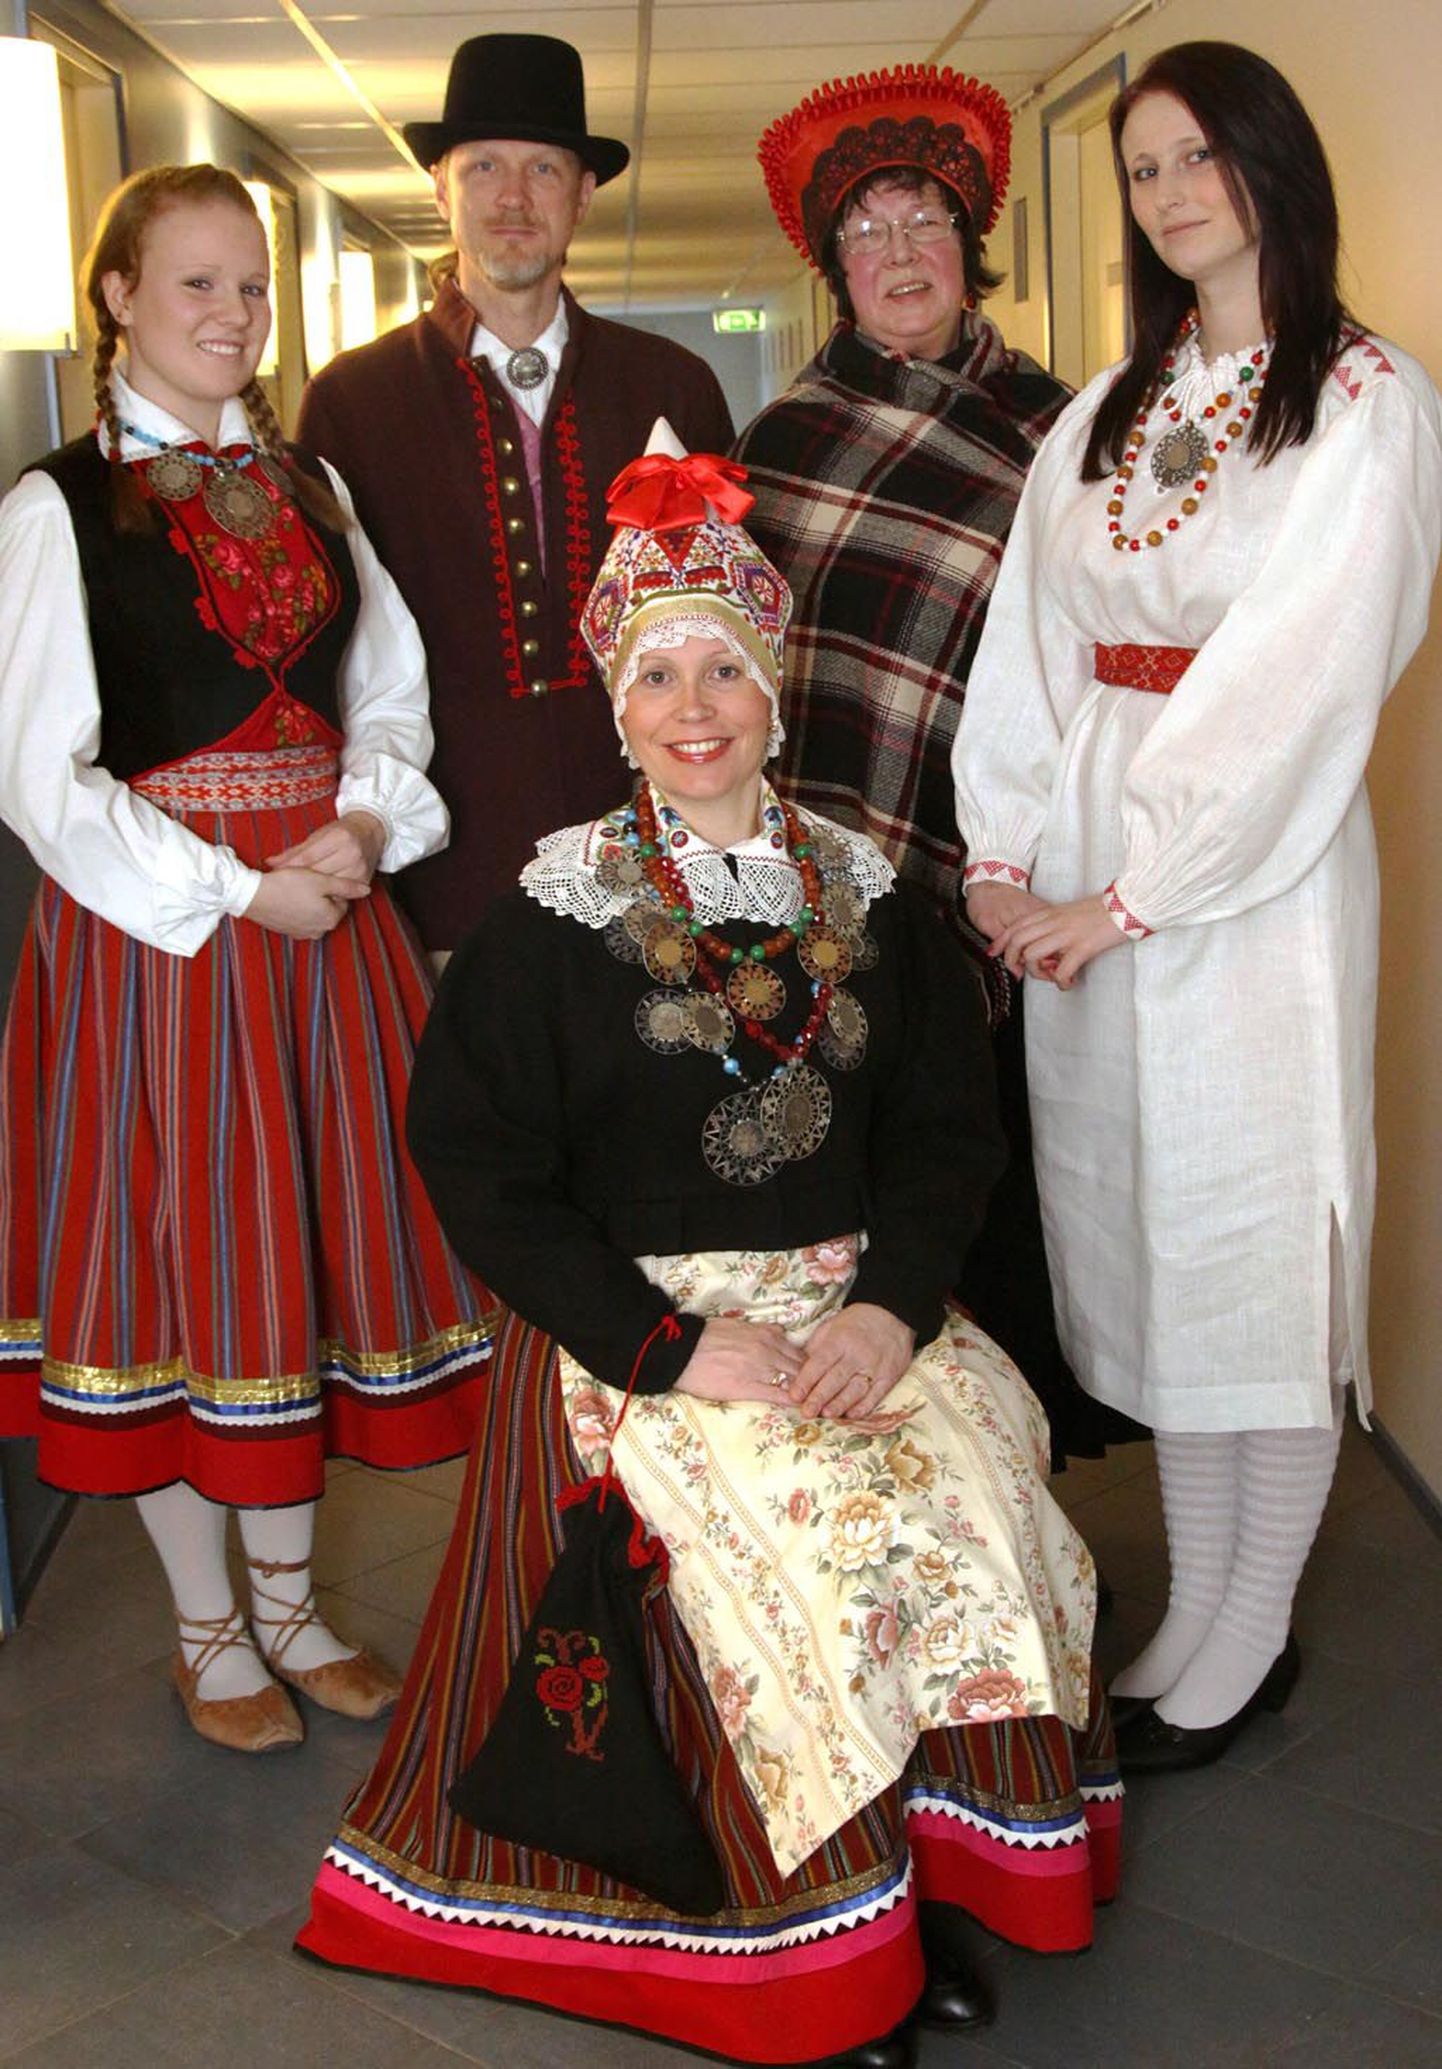 Dagmar Übner (seisab vasakul) kannab 19. sajandist pärinevat punast seelikut ja liistikut (vesti), kaelas aga ehteks kolme "tsaarikollaga" paatrit. Enn Rand esitleb Tõstamaa rõivaid. Suurrätikut ja kabimütsi kandev Marvi Volmer ütles, et Pärnul oma meesterõivaid õieti polegi, mistap on siinsetel meestel lubatud kommet rikkumata kanda nii Audru, Tõstamaa kui Mihkli kihelkonna rõivaid. Paremal seisev Mariliis Kaul on valges pikas särgis, mis on naise igapäevane tubane või suvine rõivas, kuid kireva vöö ja ehetega hõlpsasti pidulikumaks muudetav ja pilkupüüdev. Pildil ees istuv Maria talu perenaine Riina Rand on Pärnu naiserõivaste hiilguses, kus kolm paatrit kaelas ja imeilus kaugelt toodud puuvillasest riidest ja kallis põll rõhutavad emanda jõukust. Peened on ka tikandid, madarapunase pikitriibuga seelik, käekoti ornament.